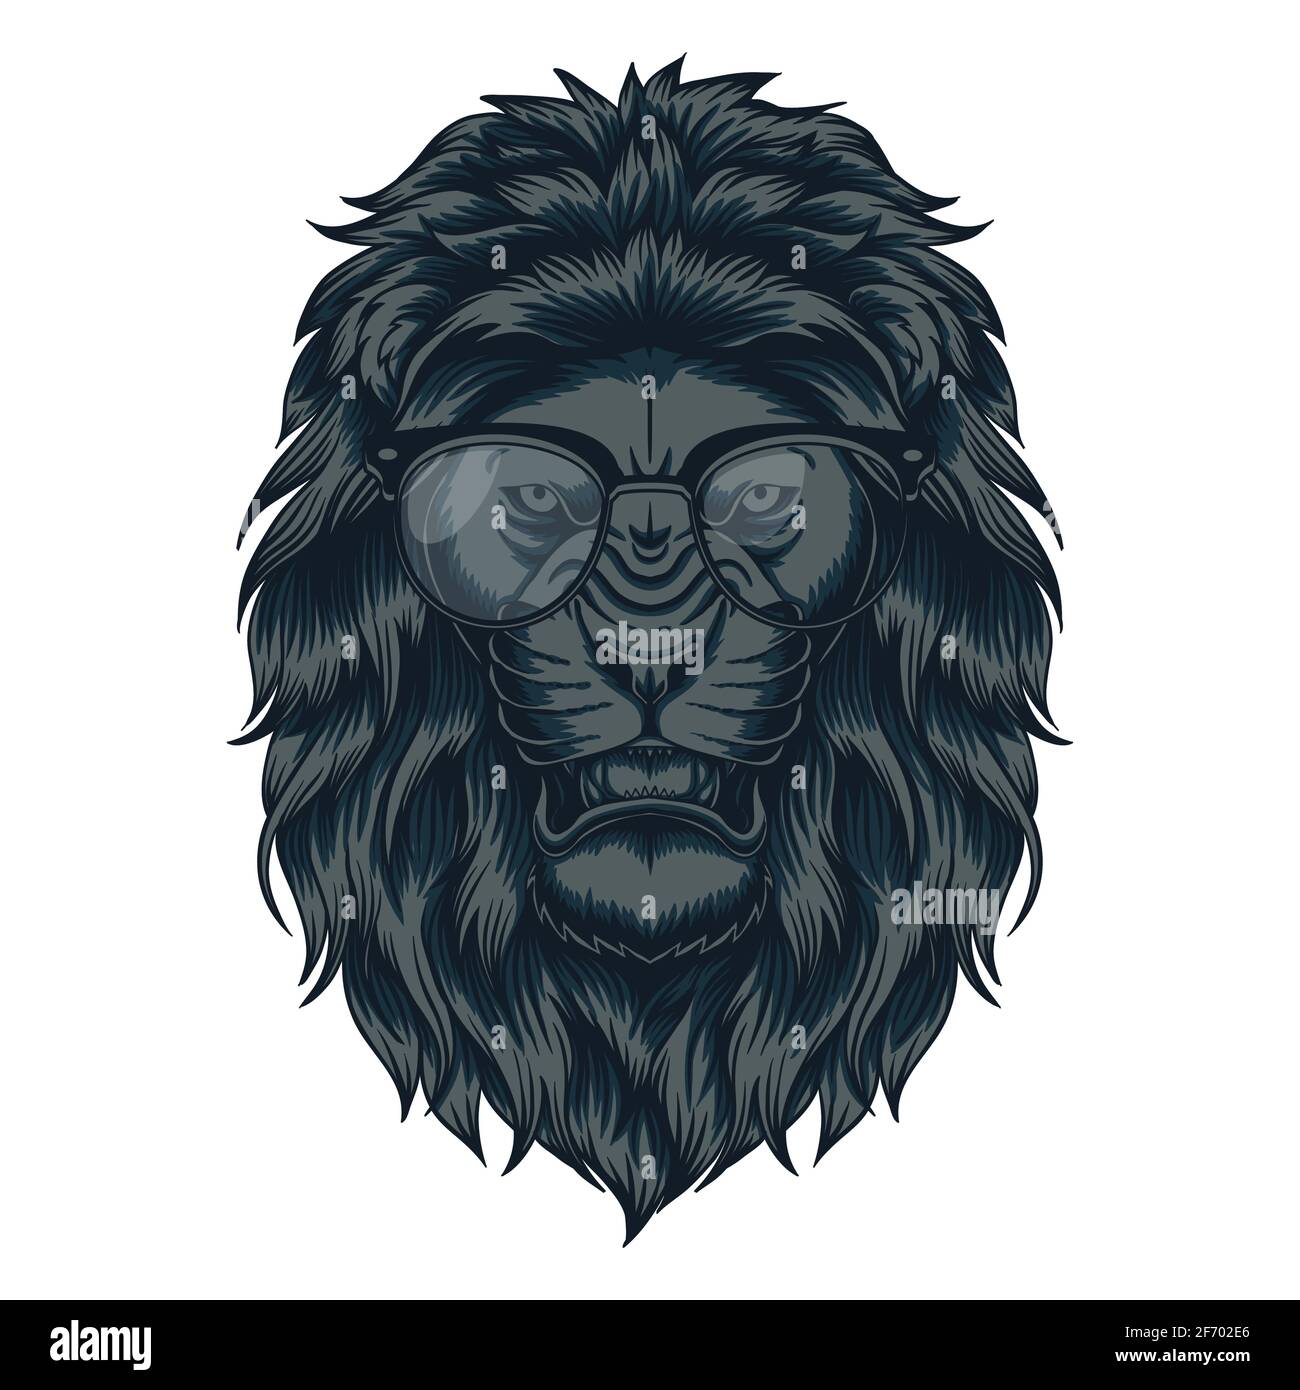 Lion Head eyeglasses vector illustration Stock Vector